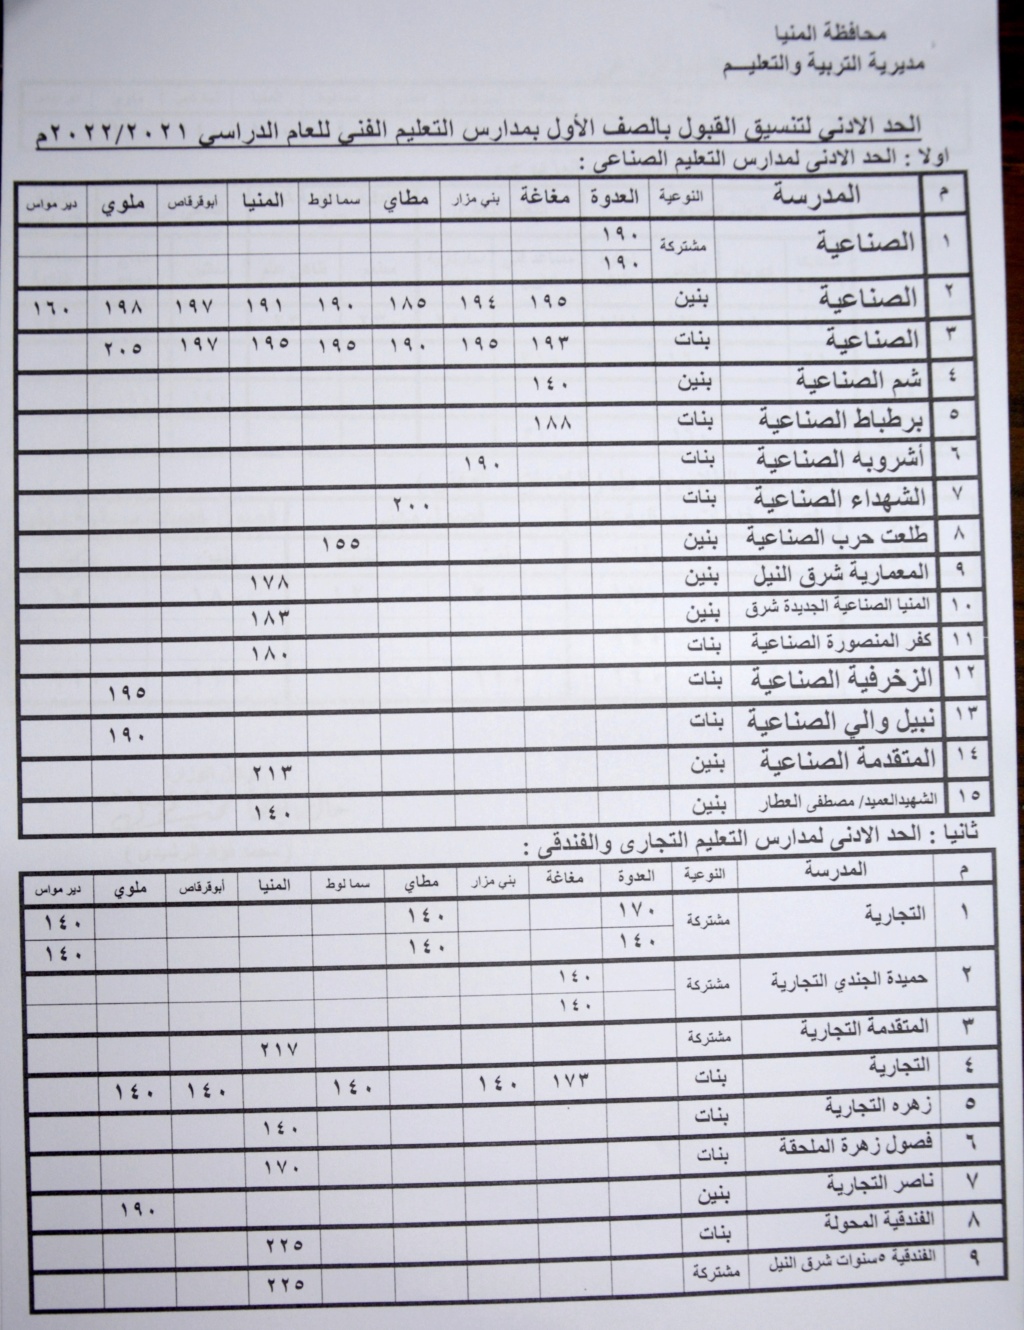 تنسيق القبول بالثانوي العام 2021 / 2022 محافظة المنيا 111176